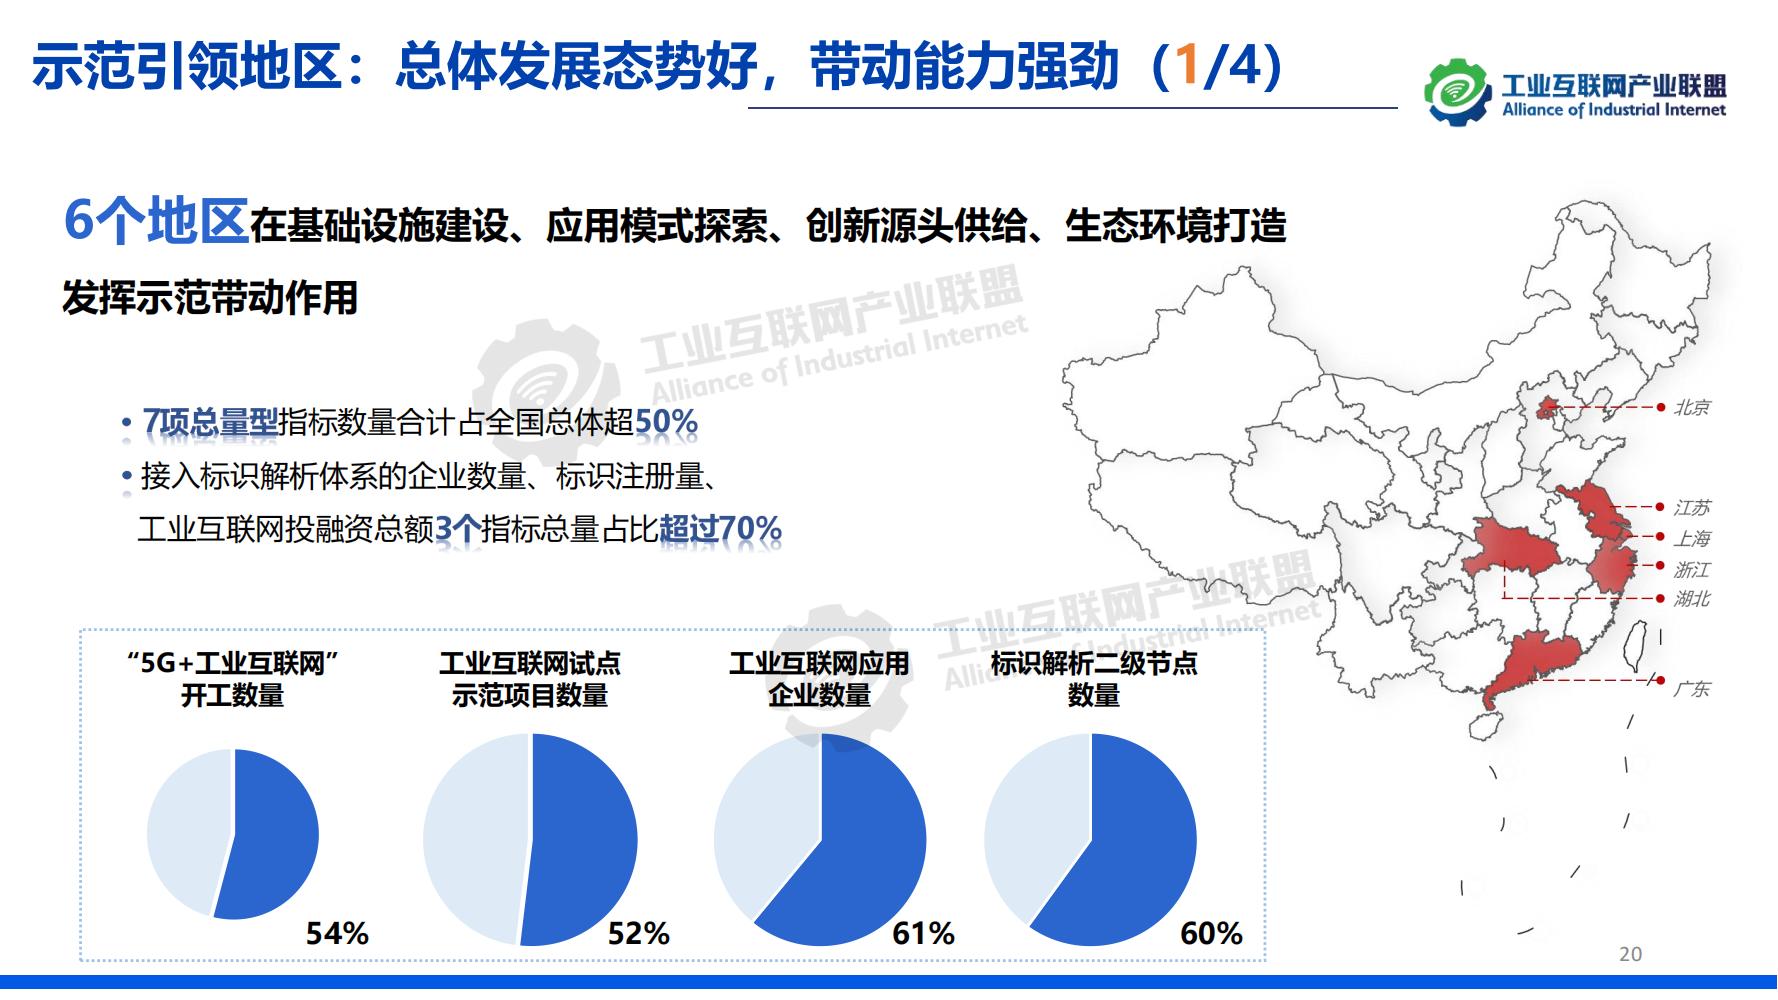 1-中国工业互联网发展成效评估报告-水印_19.jpg